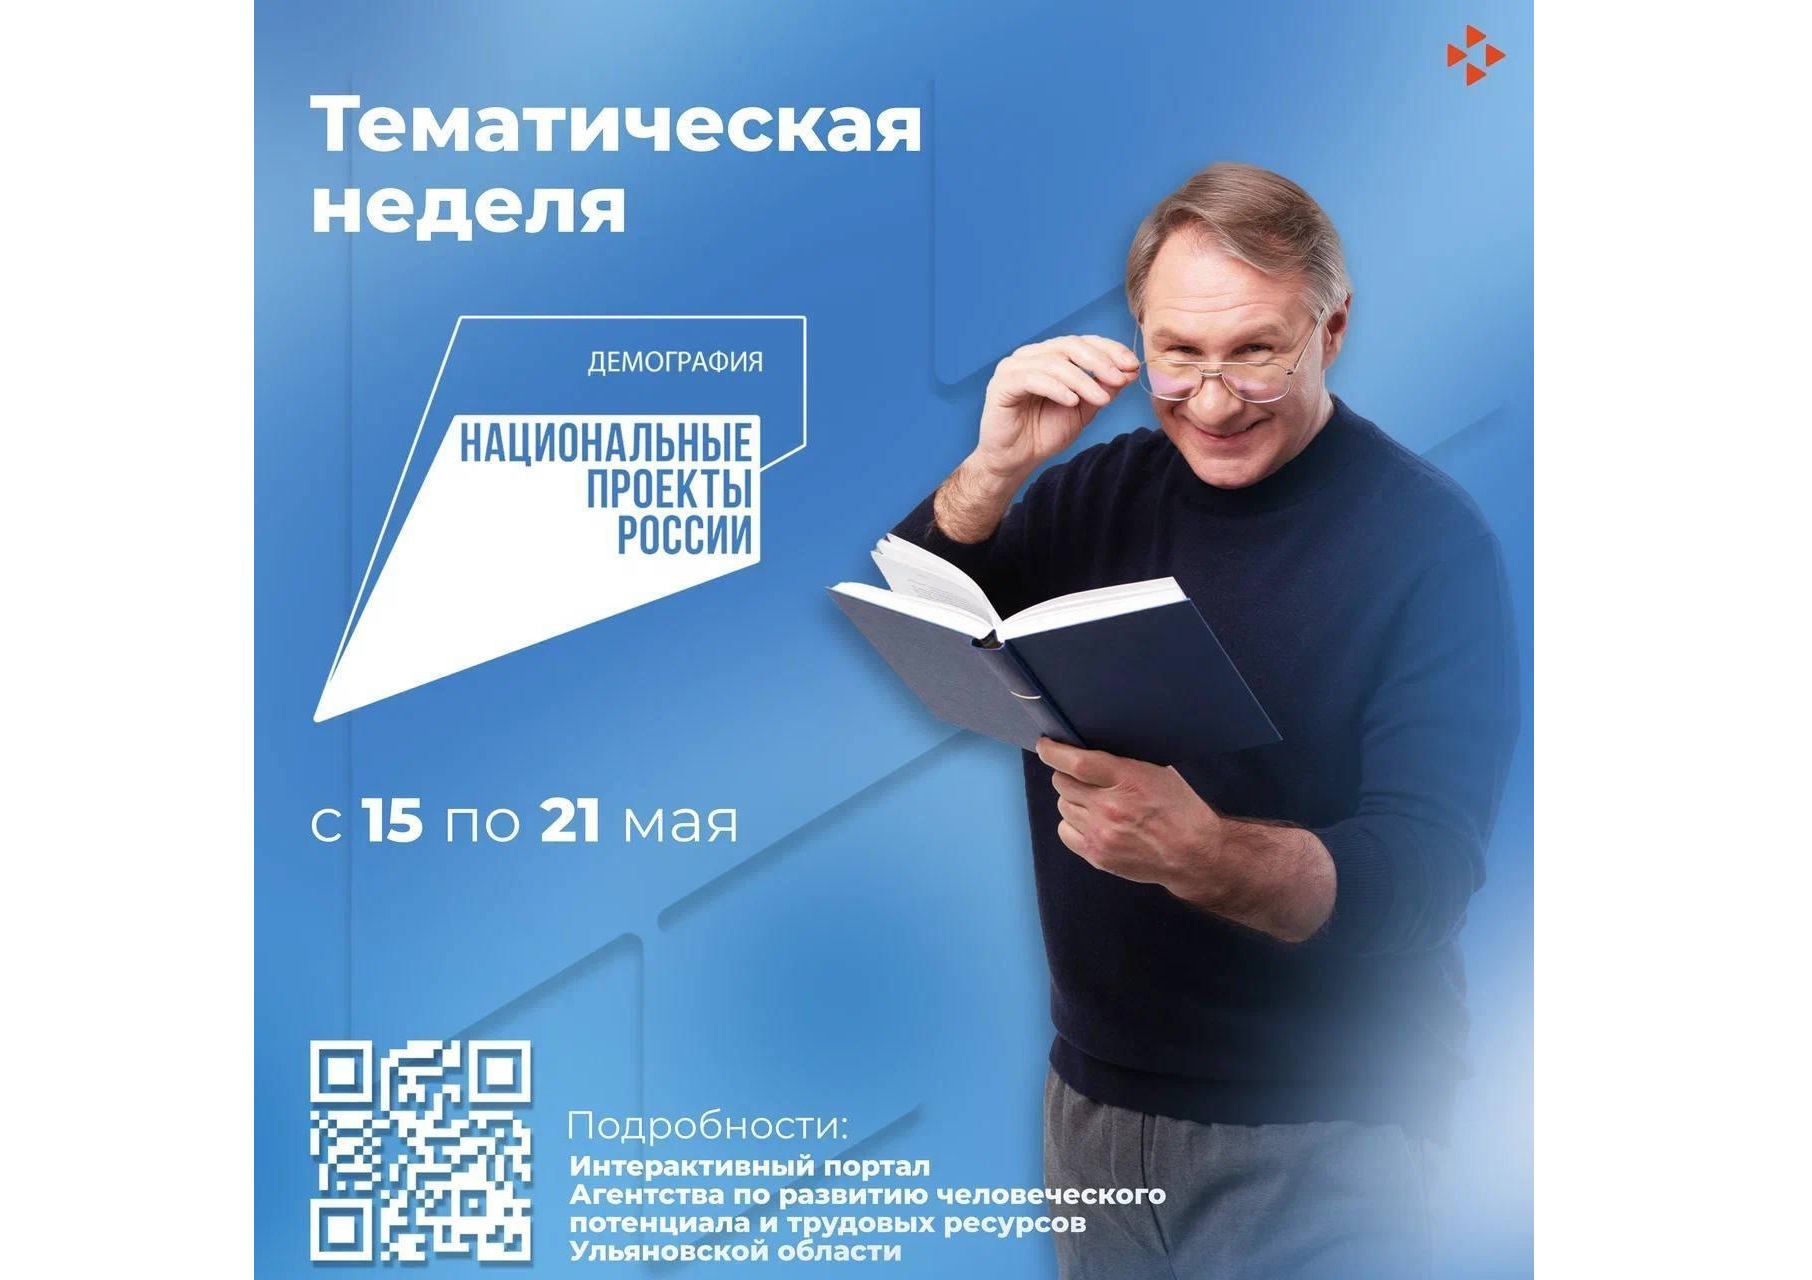 В период с 15 по 21 мая 2023 года на территории Ульяновской области пройдет тематическая неделя национального проекта «Демография».